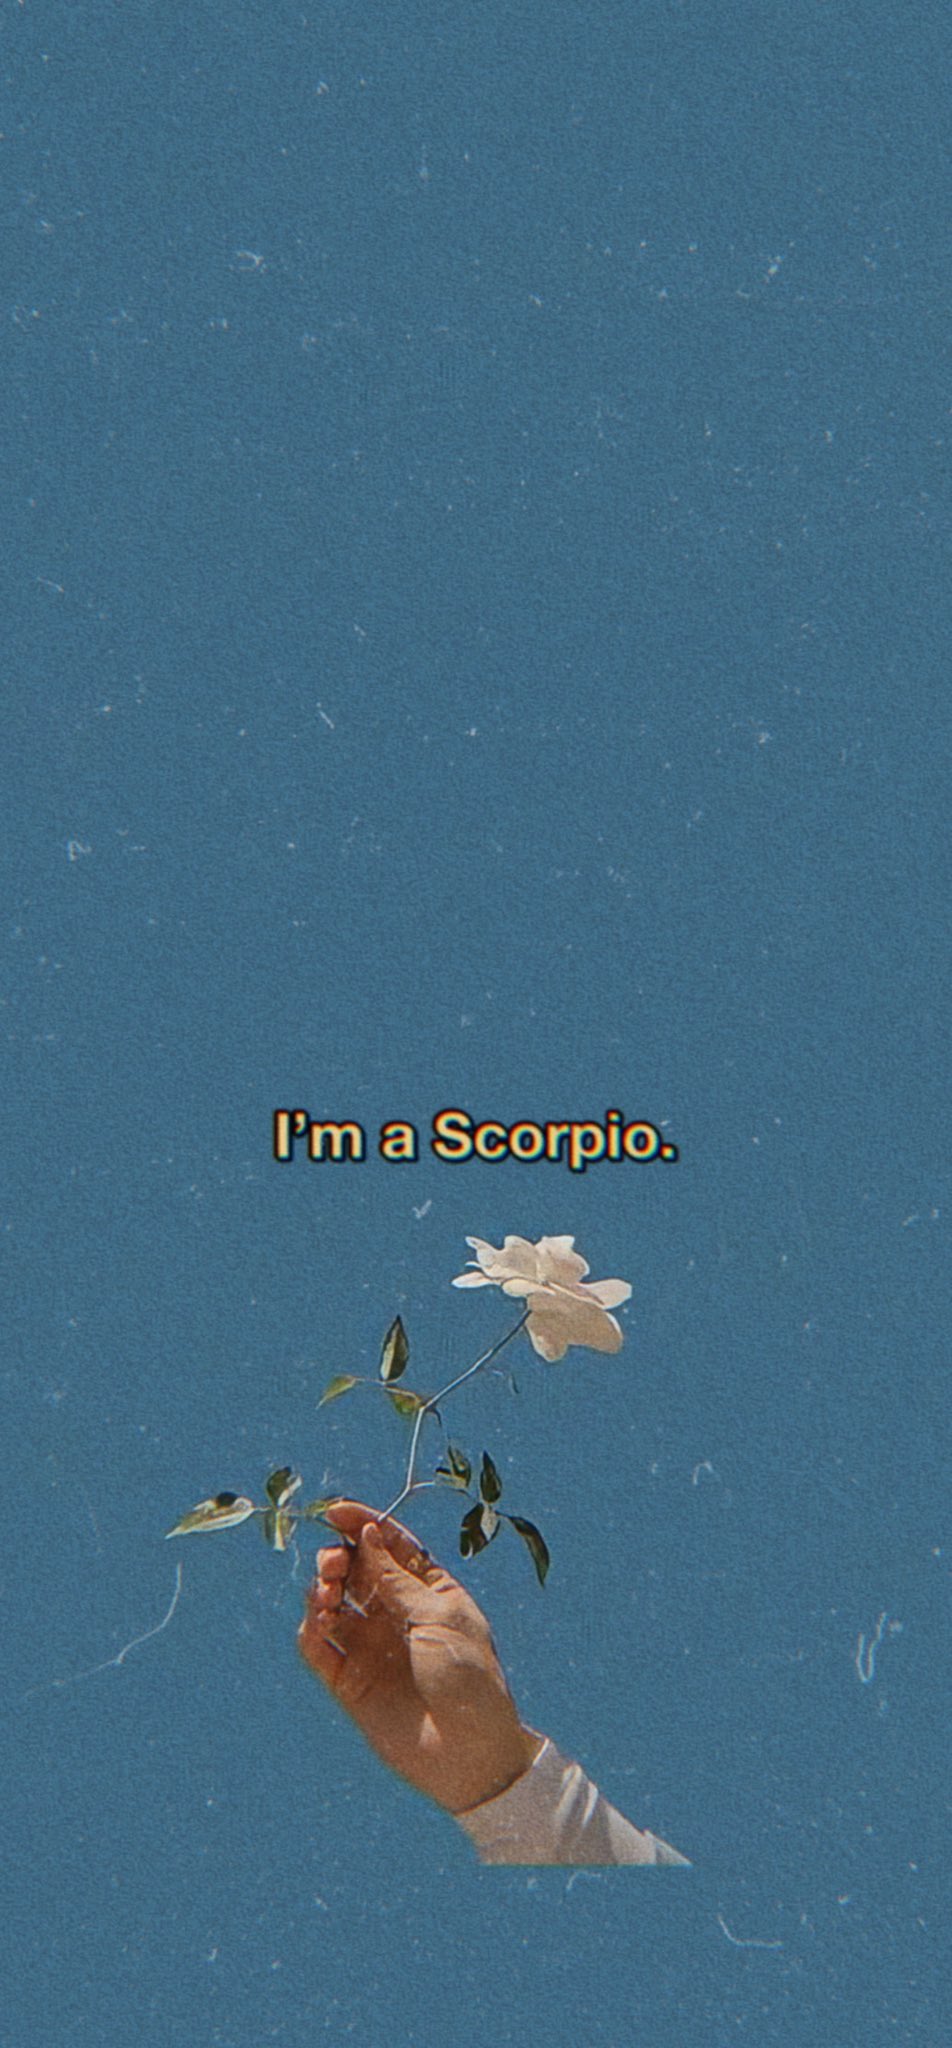 Jo wallpaper “I'm a Scorpio.” kind of mood #Scorpio # scorpiogirl #Scorpion #wallpaper #aesthetic #aestheticmood #blue